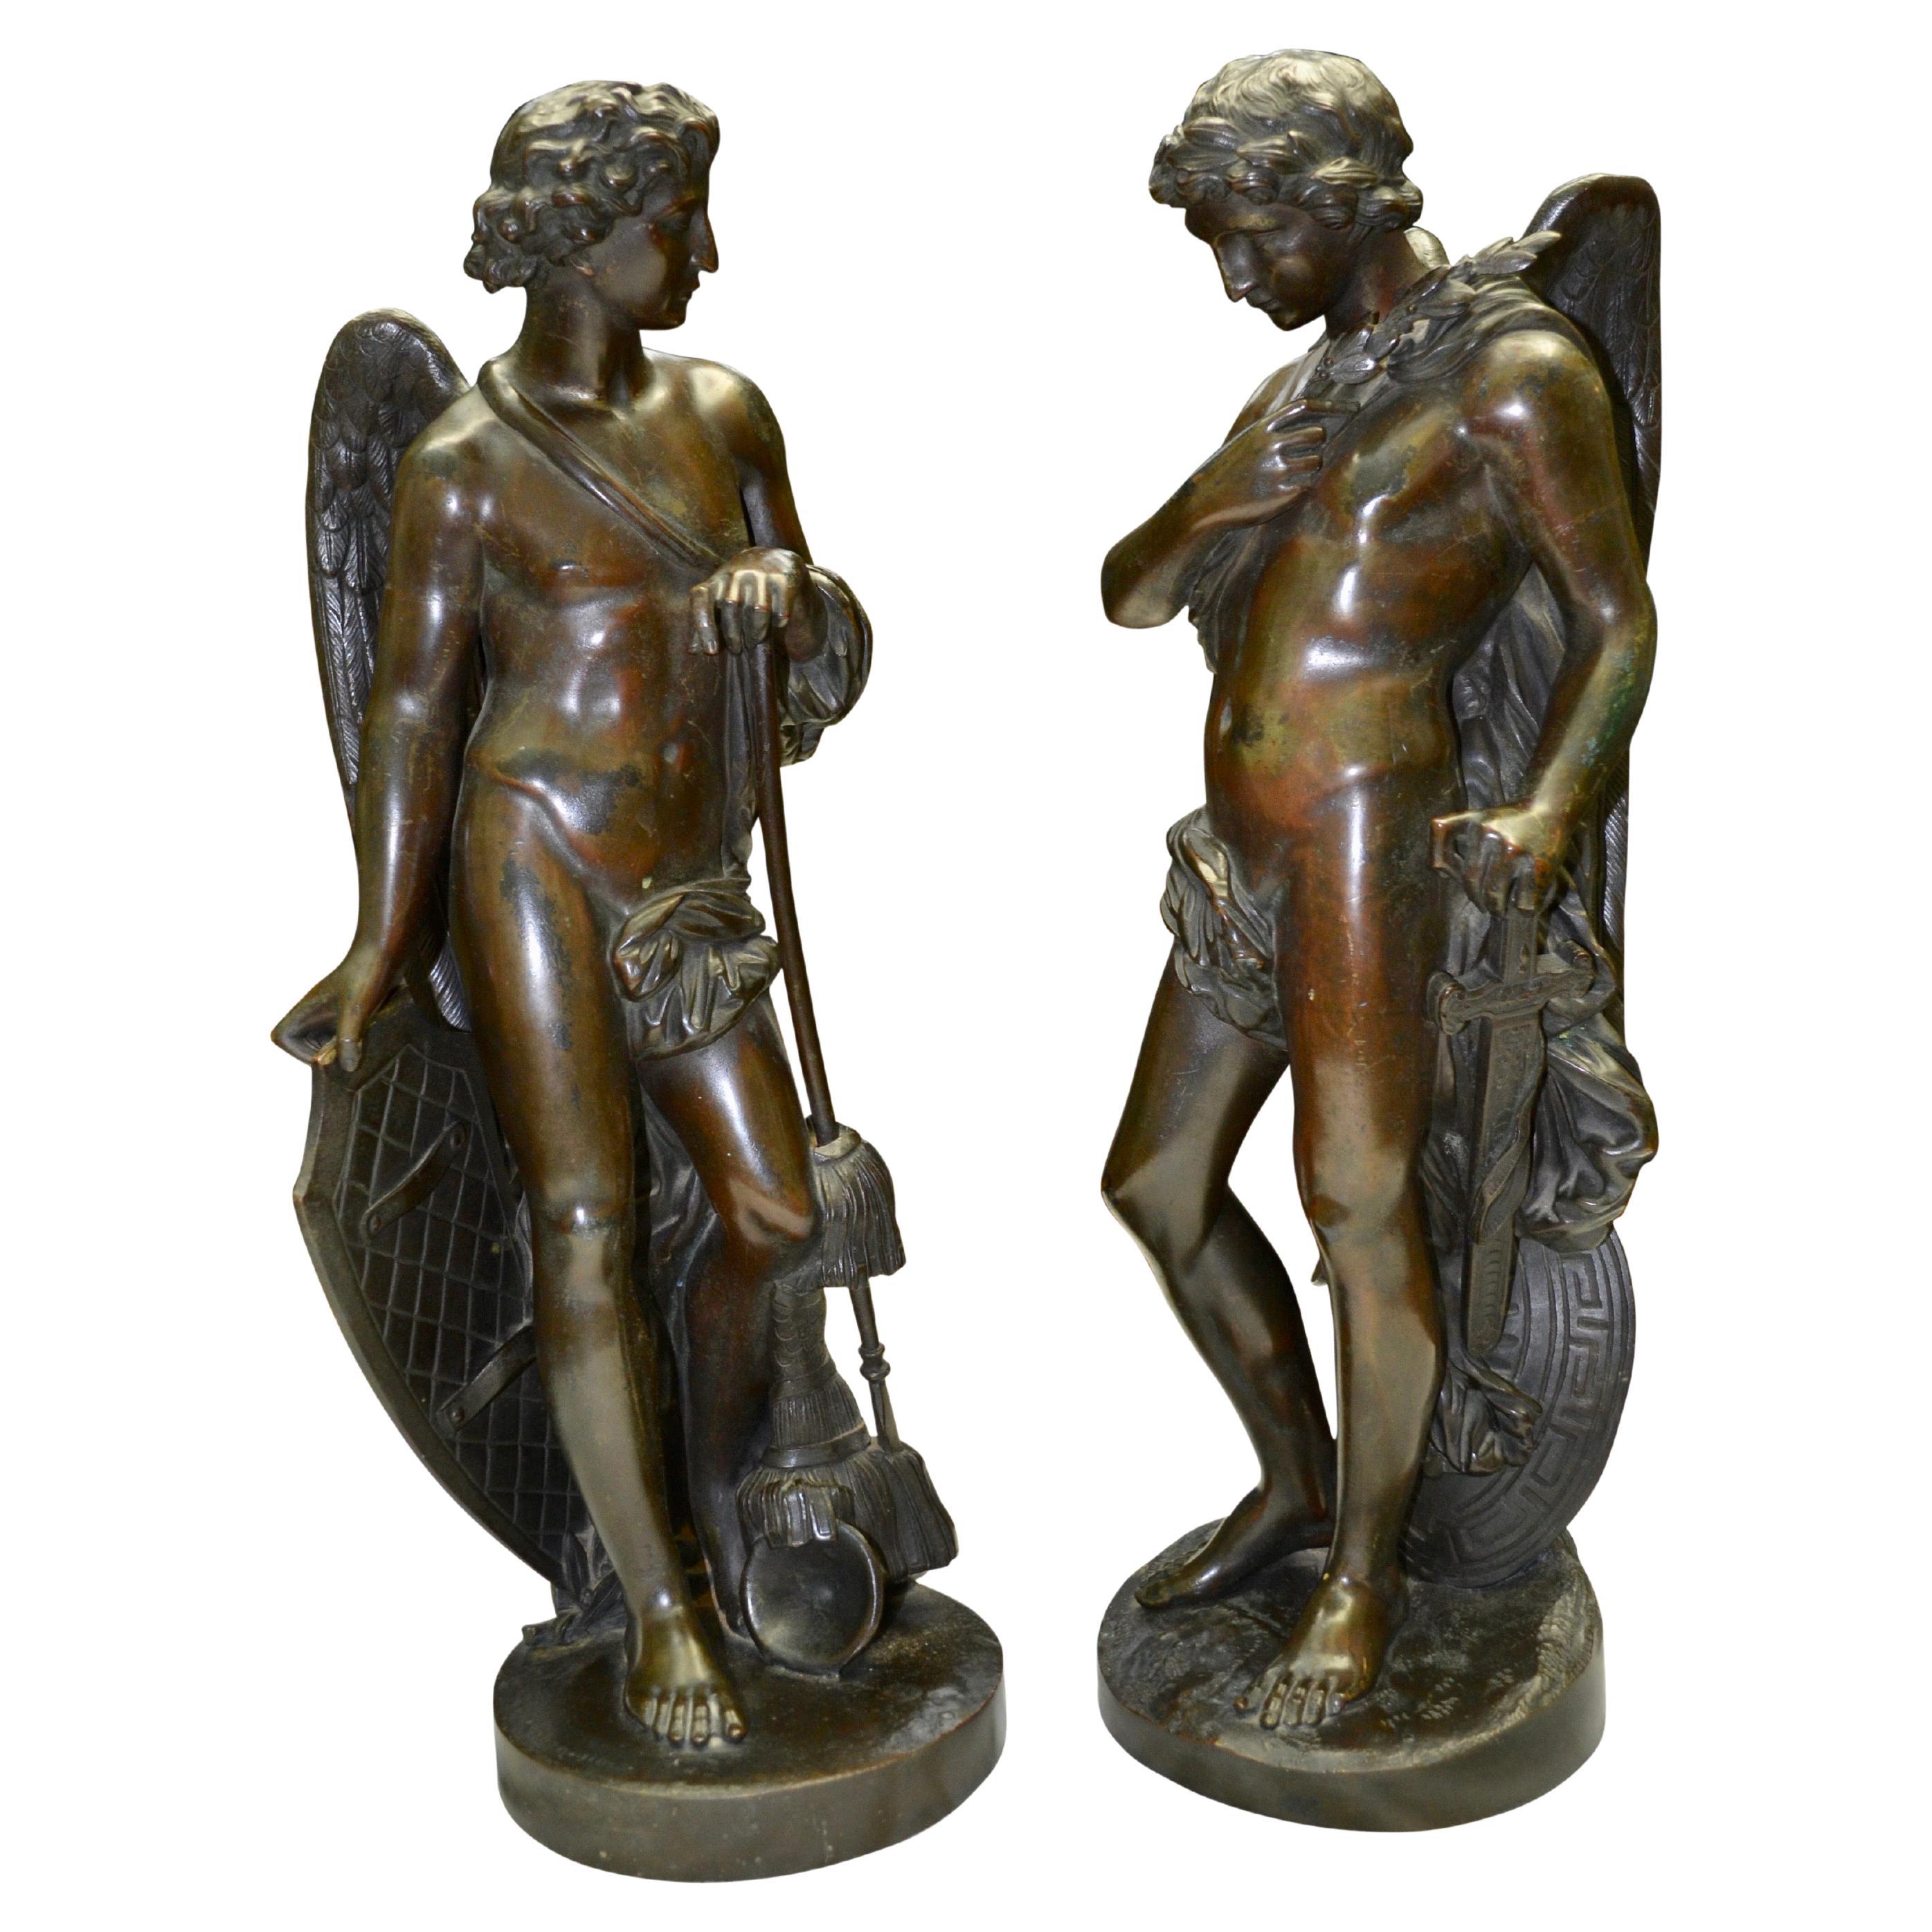 Paire complémentaire de statues gréco-romaines en bronze patiné, rares et magnifiquement coulées, représentant des figures masculines ailées, principalement nues, mais en partie drapées de façon classique, et étonnamment non signées. 

L'un des